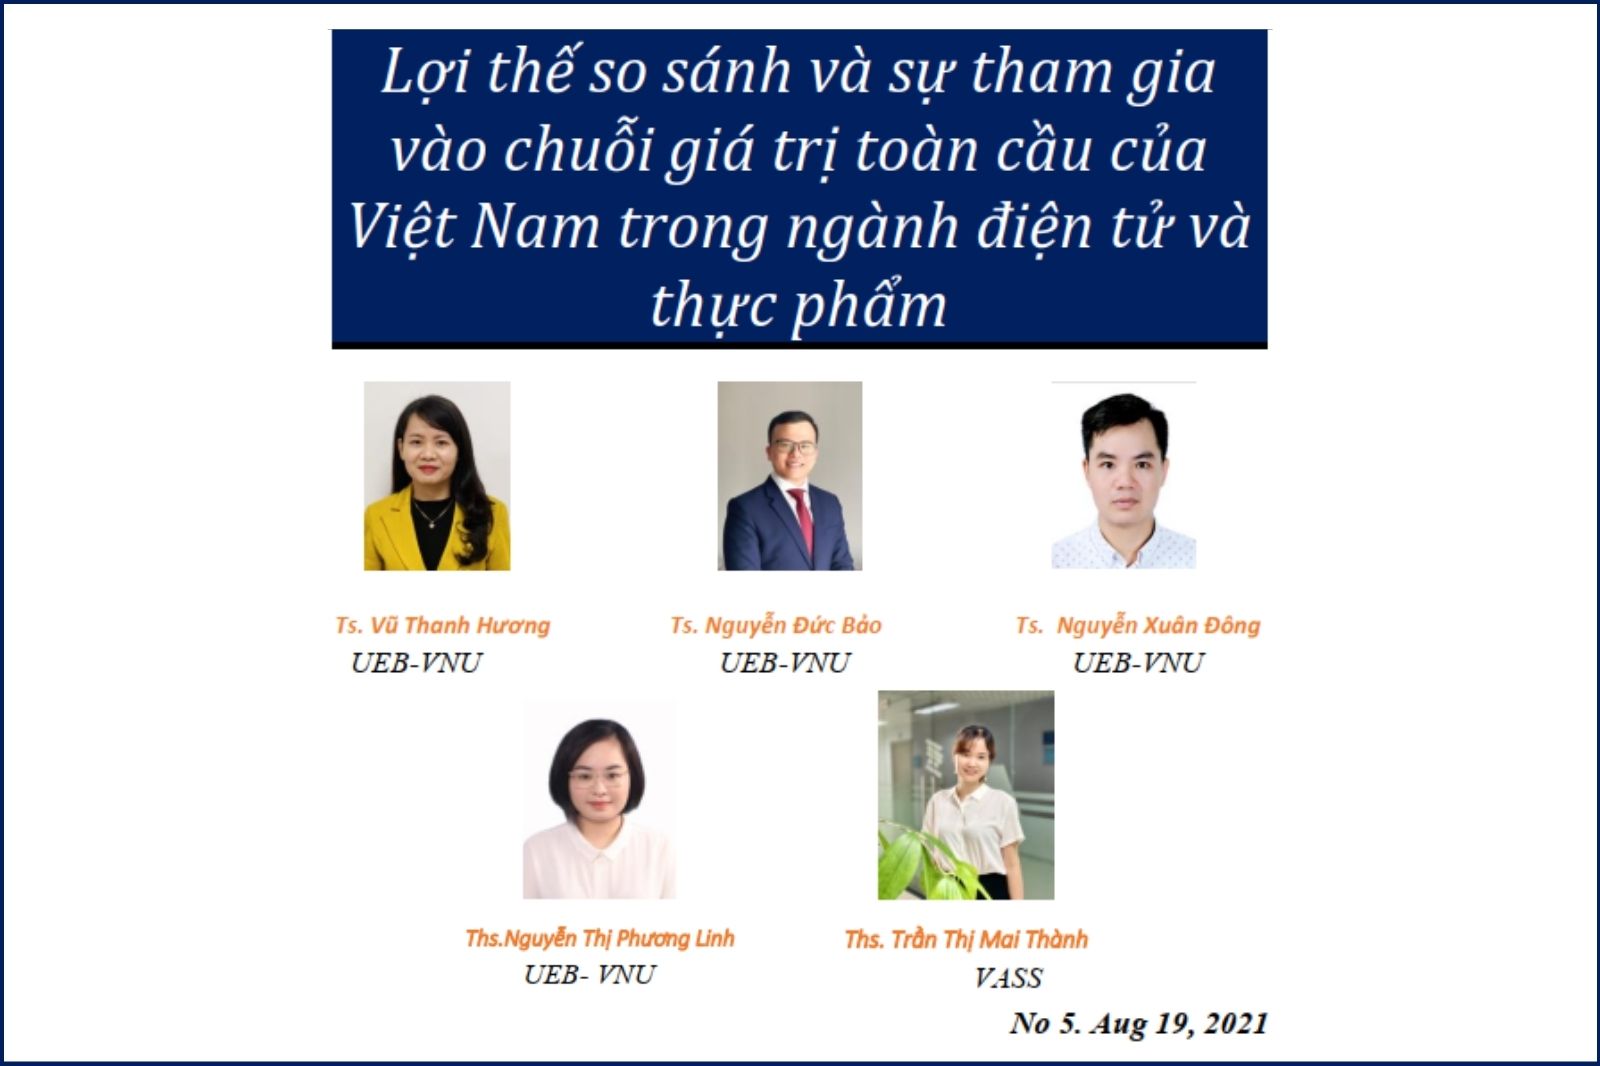 Lợi thế so sánh và sự tham gia vào chuỗi giá trị toàn cầu của Việt Nam trong ngành điện tử và thực phẩm